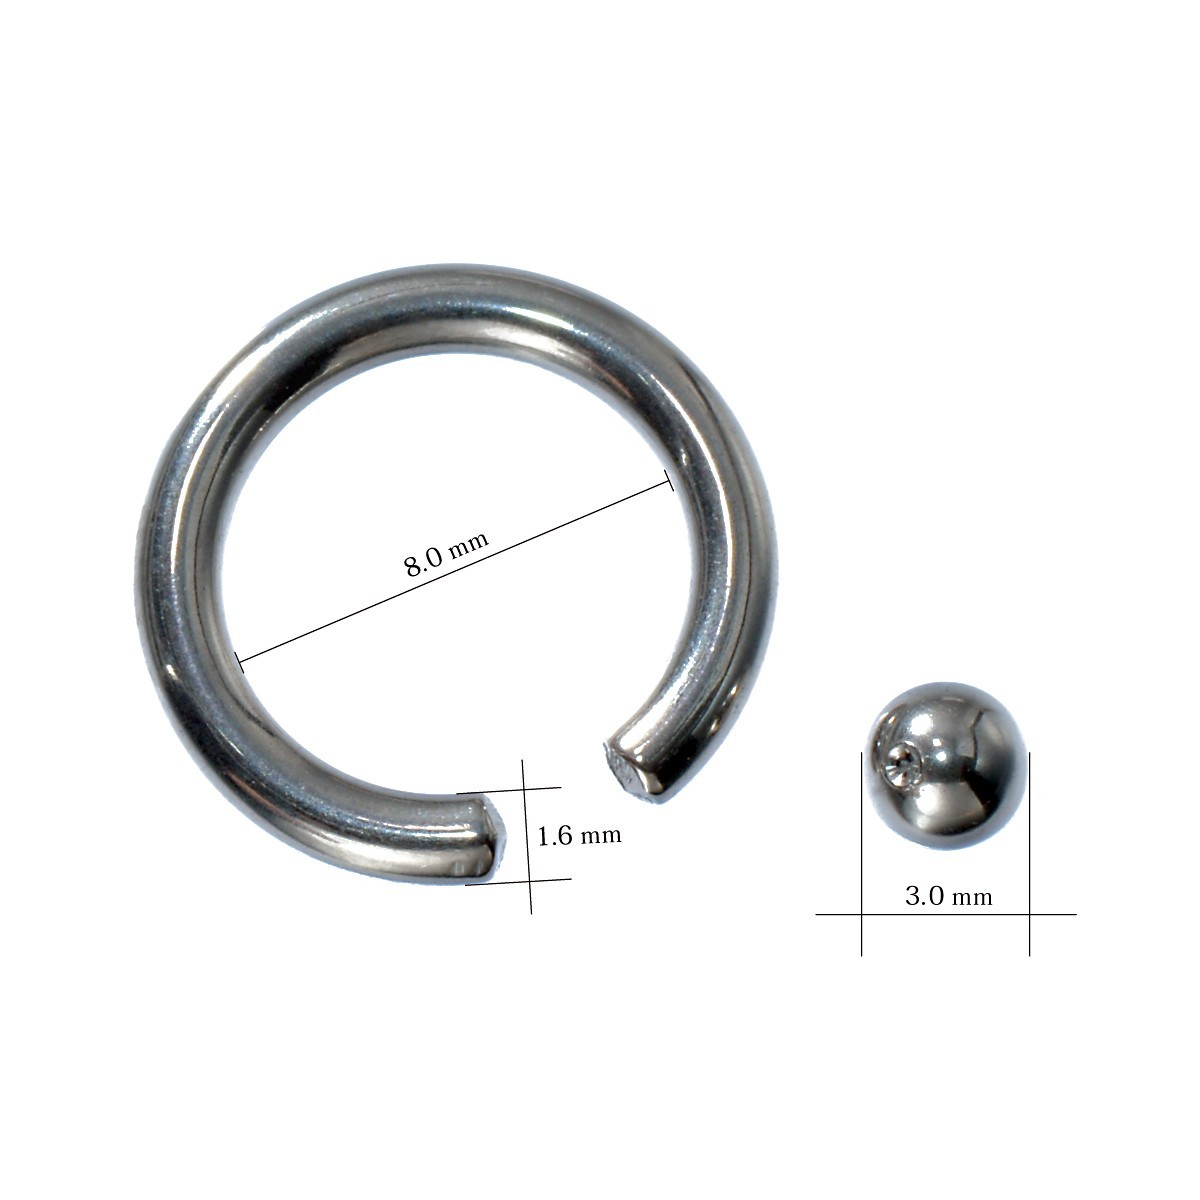 [ продажа по отдельности /1 шт ] пирсинги titanium колпак tib бисер кольцо standard body серьги 14 мера внутренний диаметр 8.0mm мяч 3.0mm серебряный цвет 